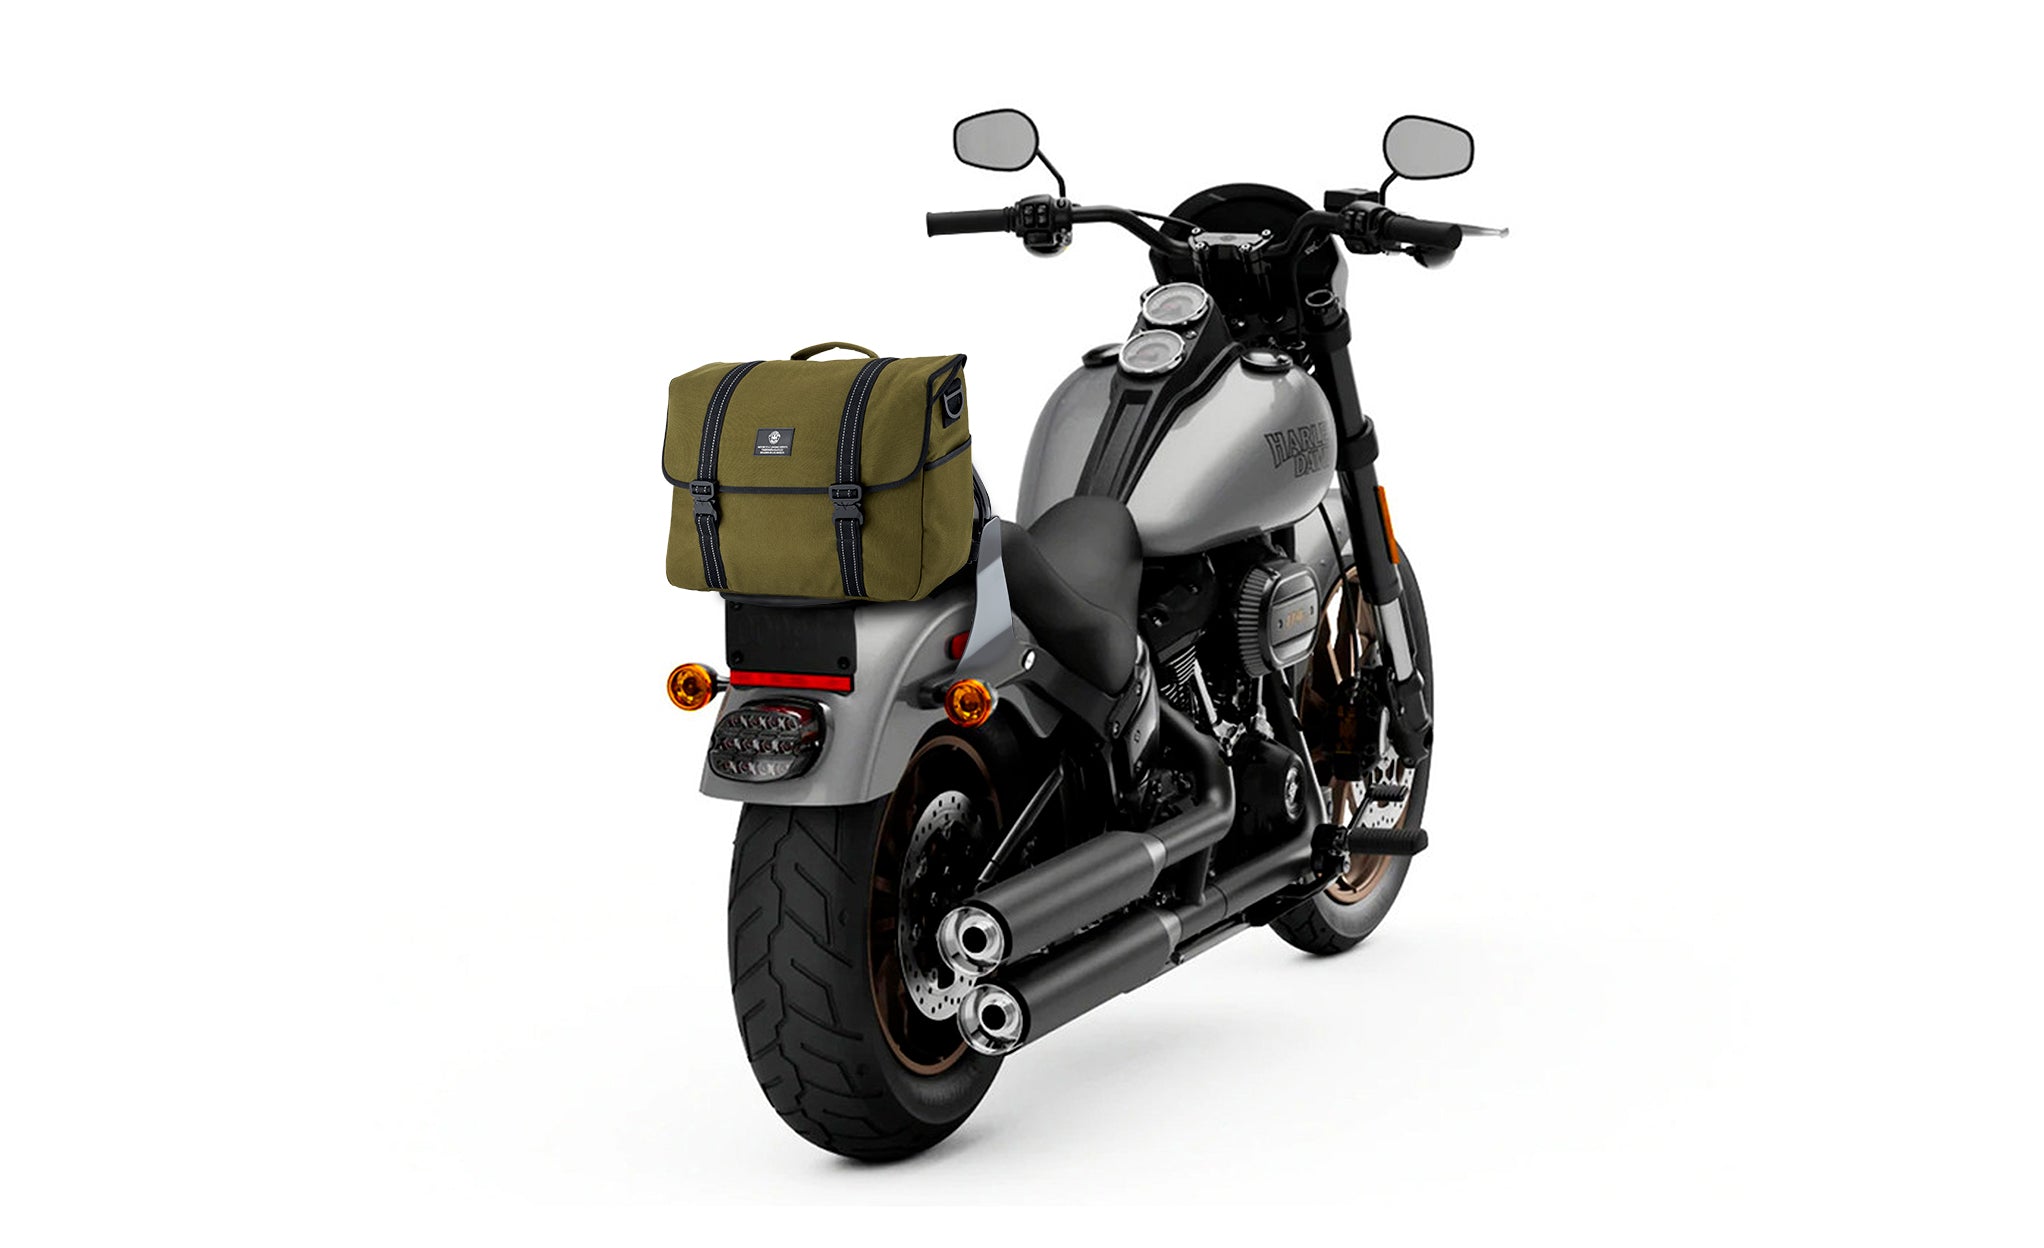 Viking Duo-tone Medium Motorcycle Messenger Bag Green/Black Bag on Bike View @expand